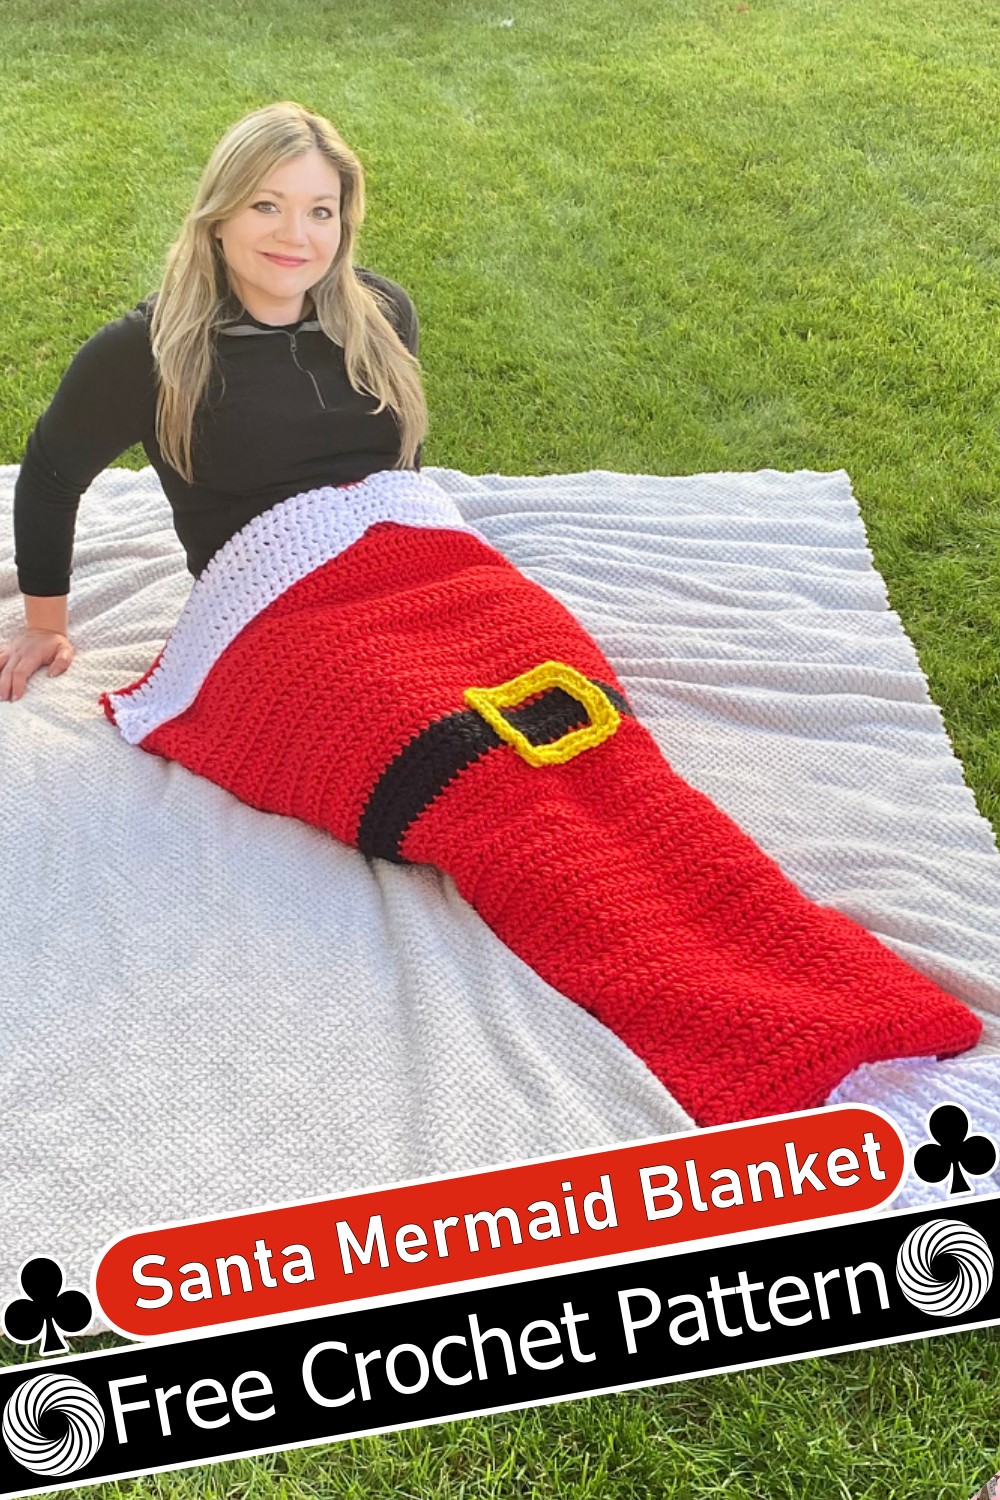 Santa Mermaid Blanket